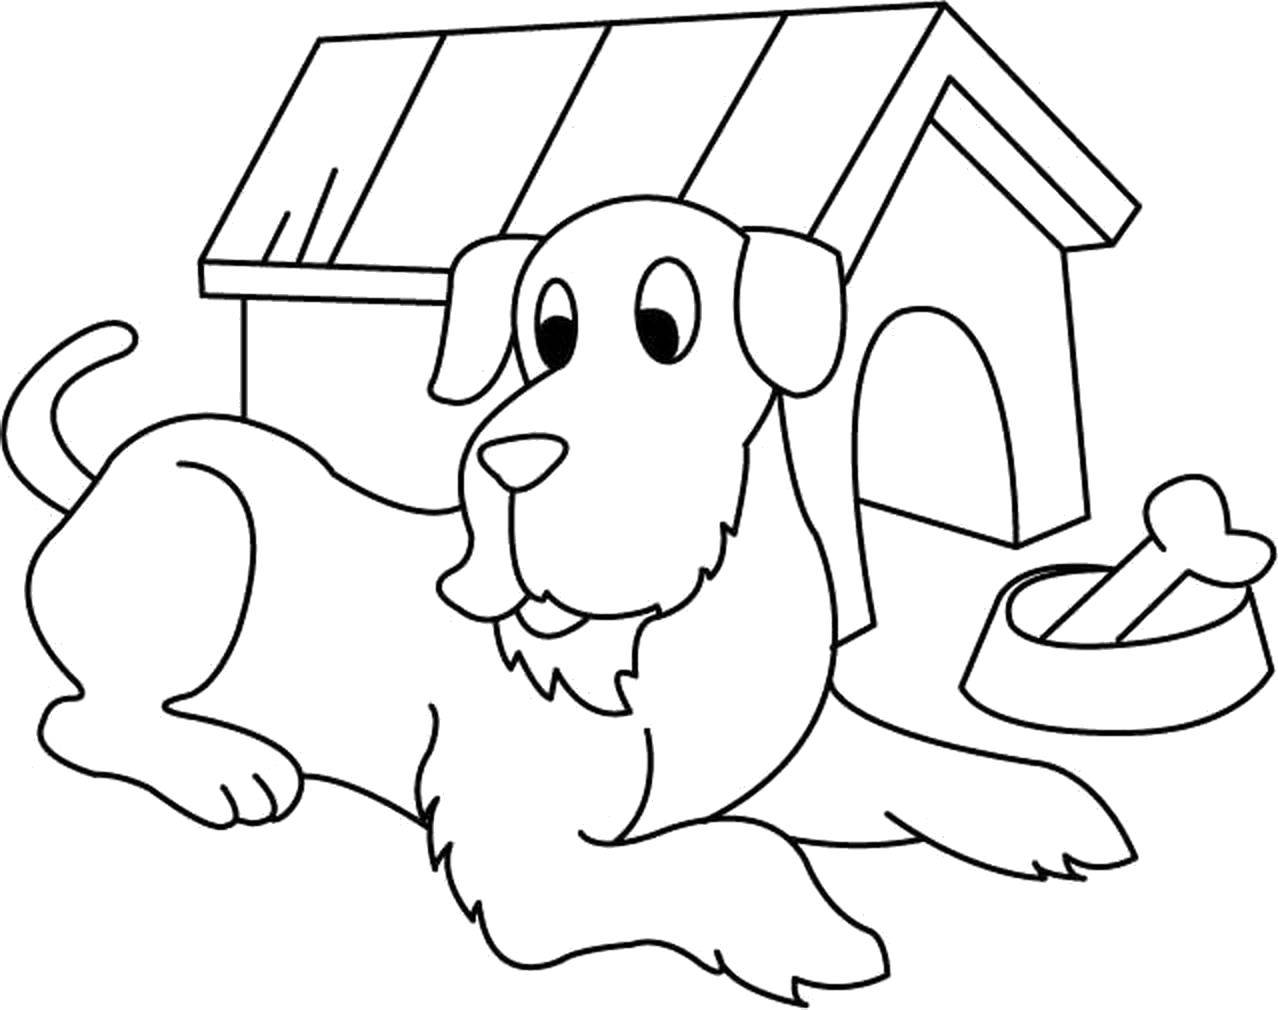 Название: Раскраска Собака с будкой. Категория: Животные. Теги: собака, будка.